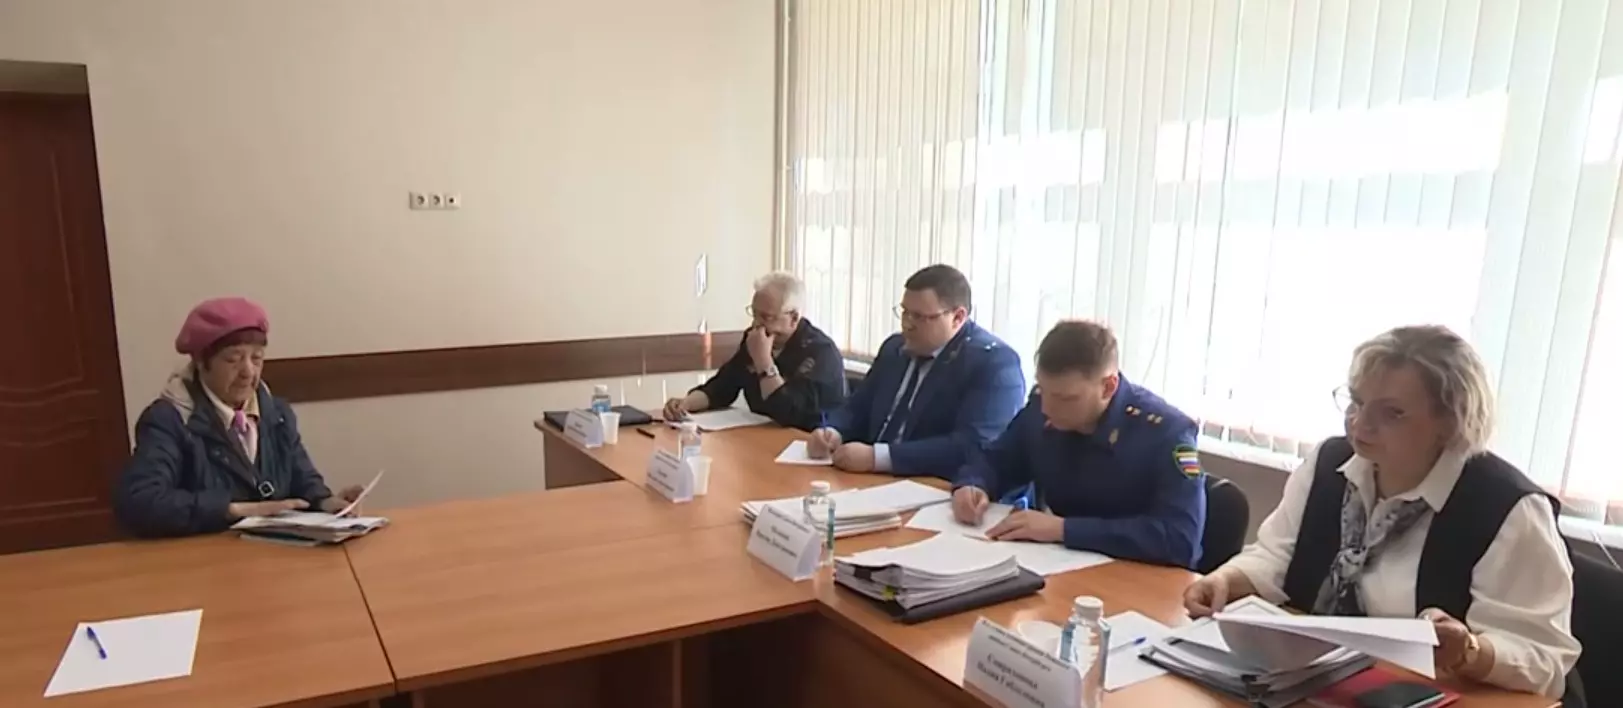 Личный прием провел прокурор Санкт-Петербурга Виктор Мельник